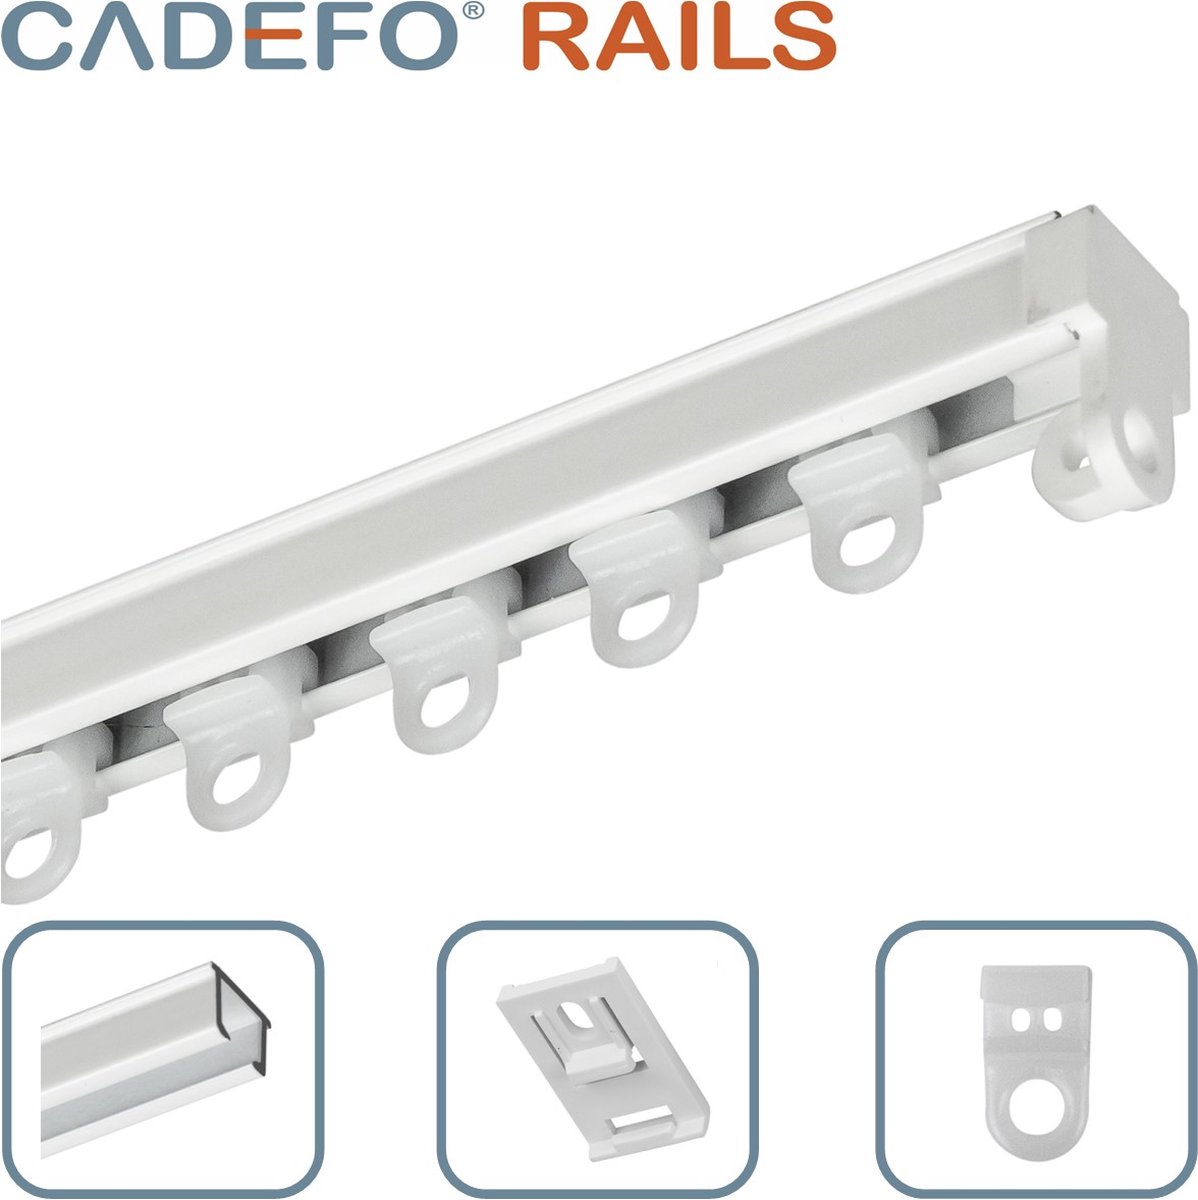 CADEFO RAILS (151 - 200 cm) Gordijnrails - Compleet op maat! - UIT 1 STUK - Leverbaar tot 6 meter - Plafondbevestiging - Lengte 194 cm